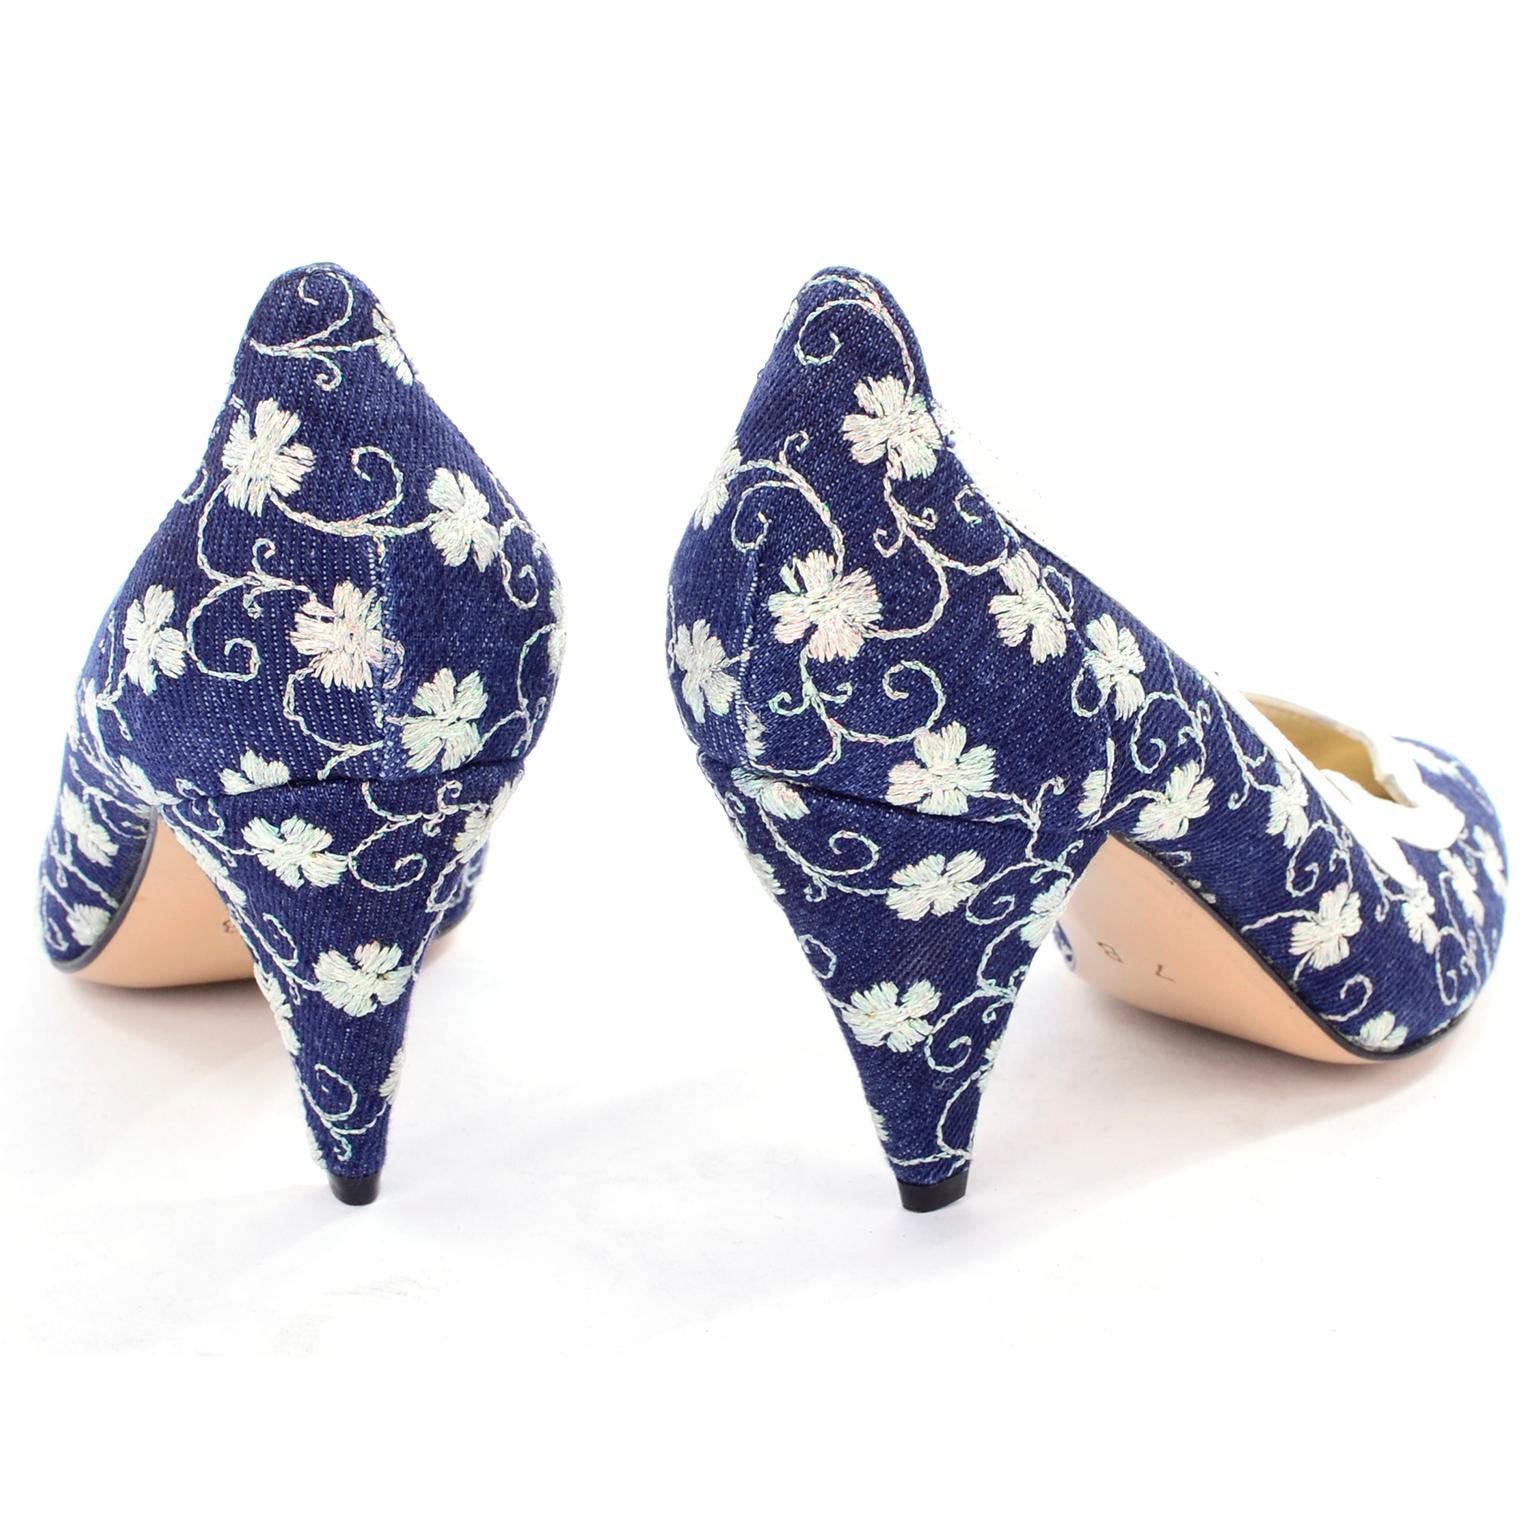 Beige Carlo Fiori - Chaussures brodées bleu marine et blanc, en stock, non portées, taille 7B